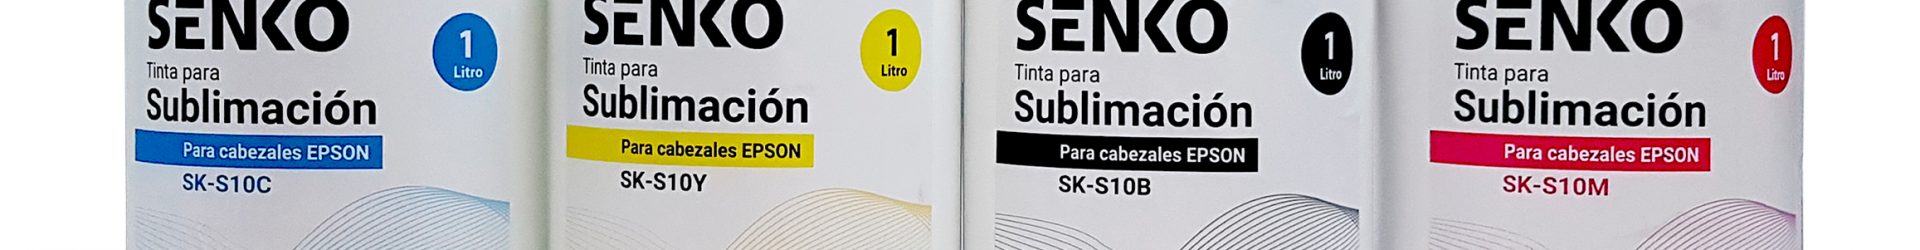 Tinta de Sublimacion SENKO SK10 Litro